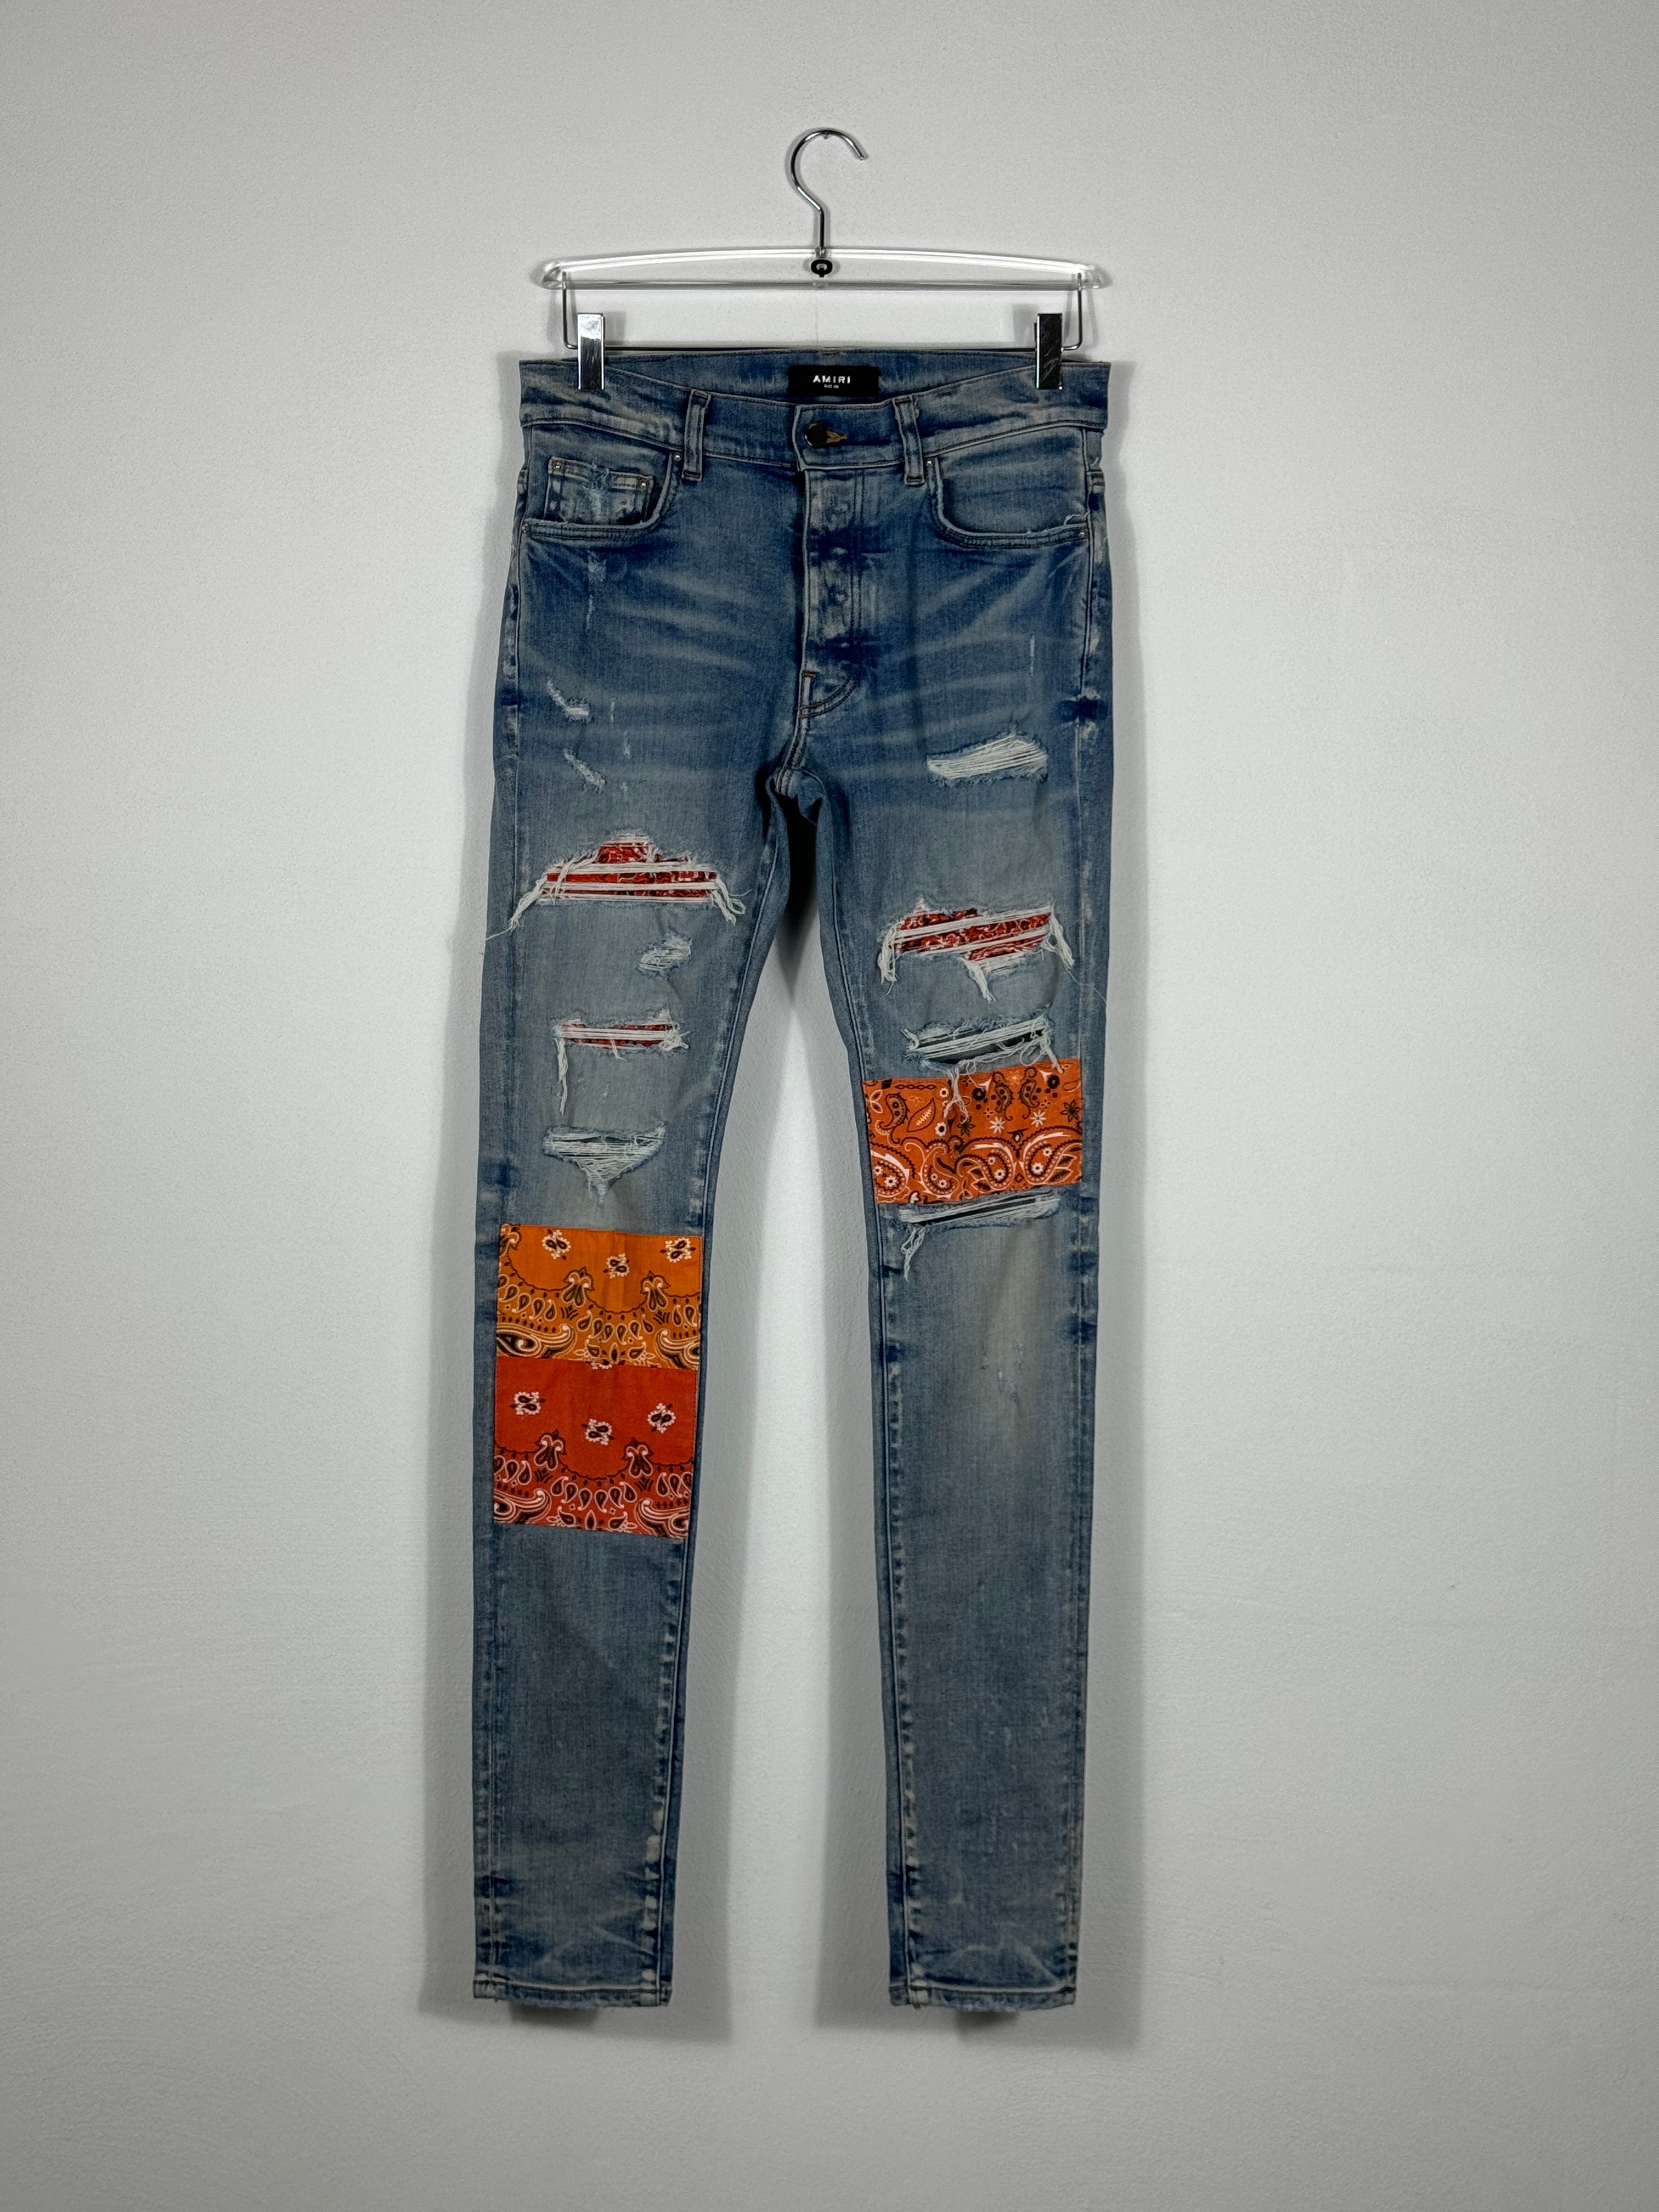 Bandana Jeans by Sfera Ebbasta